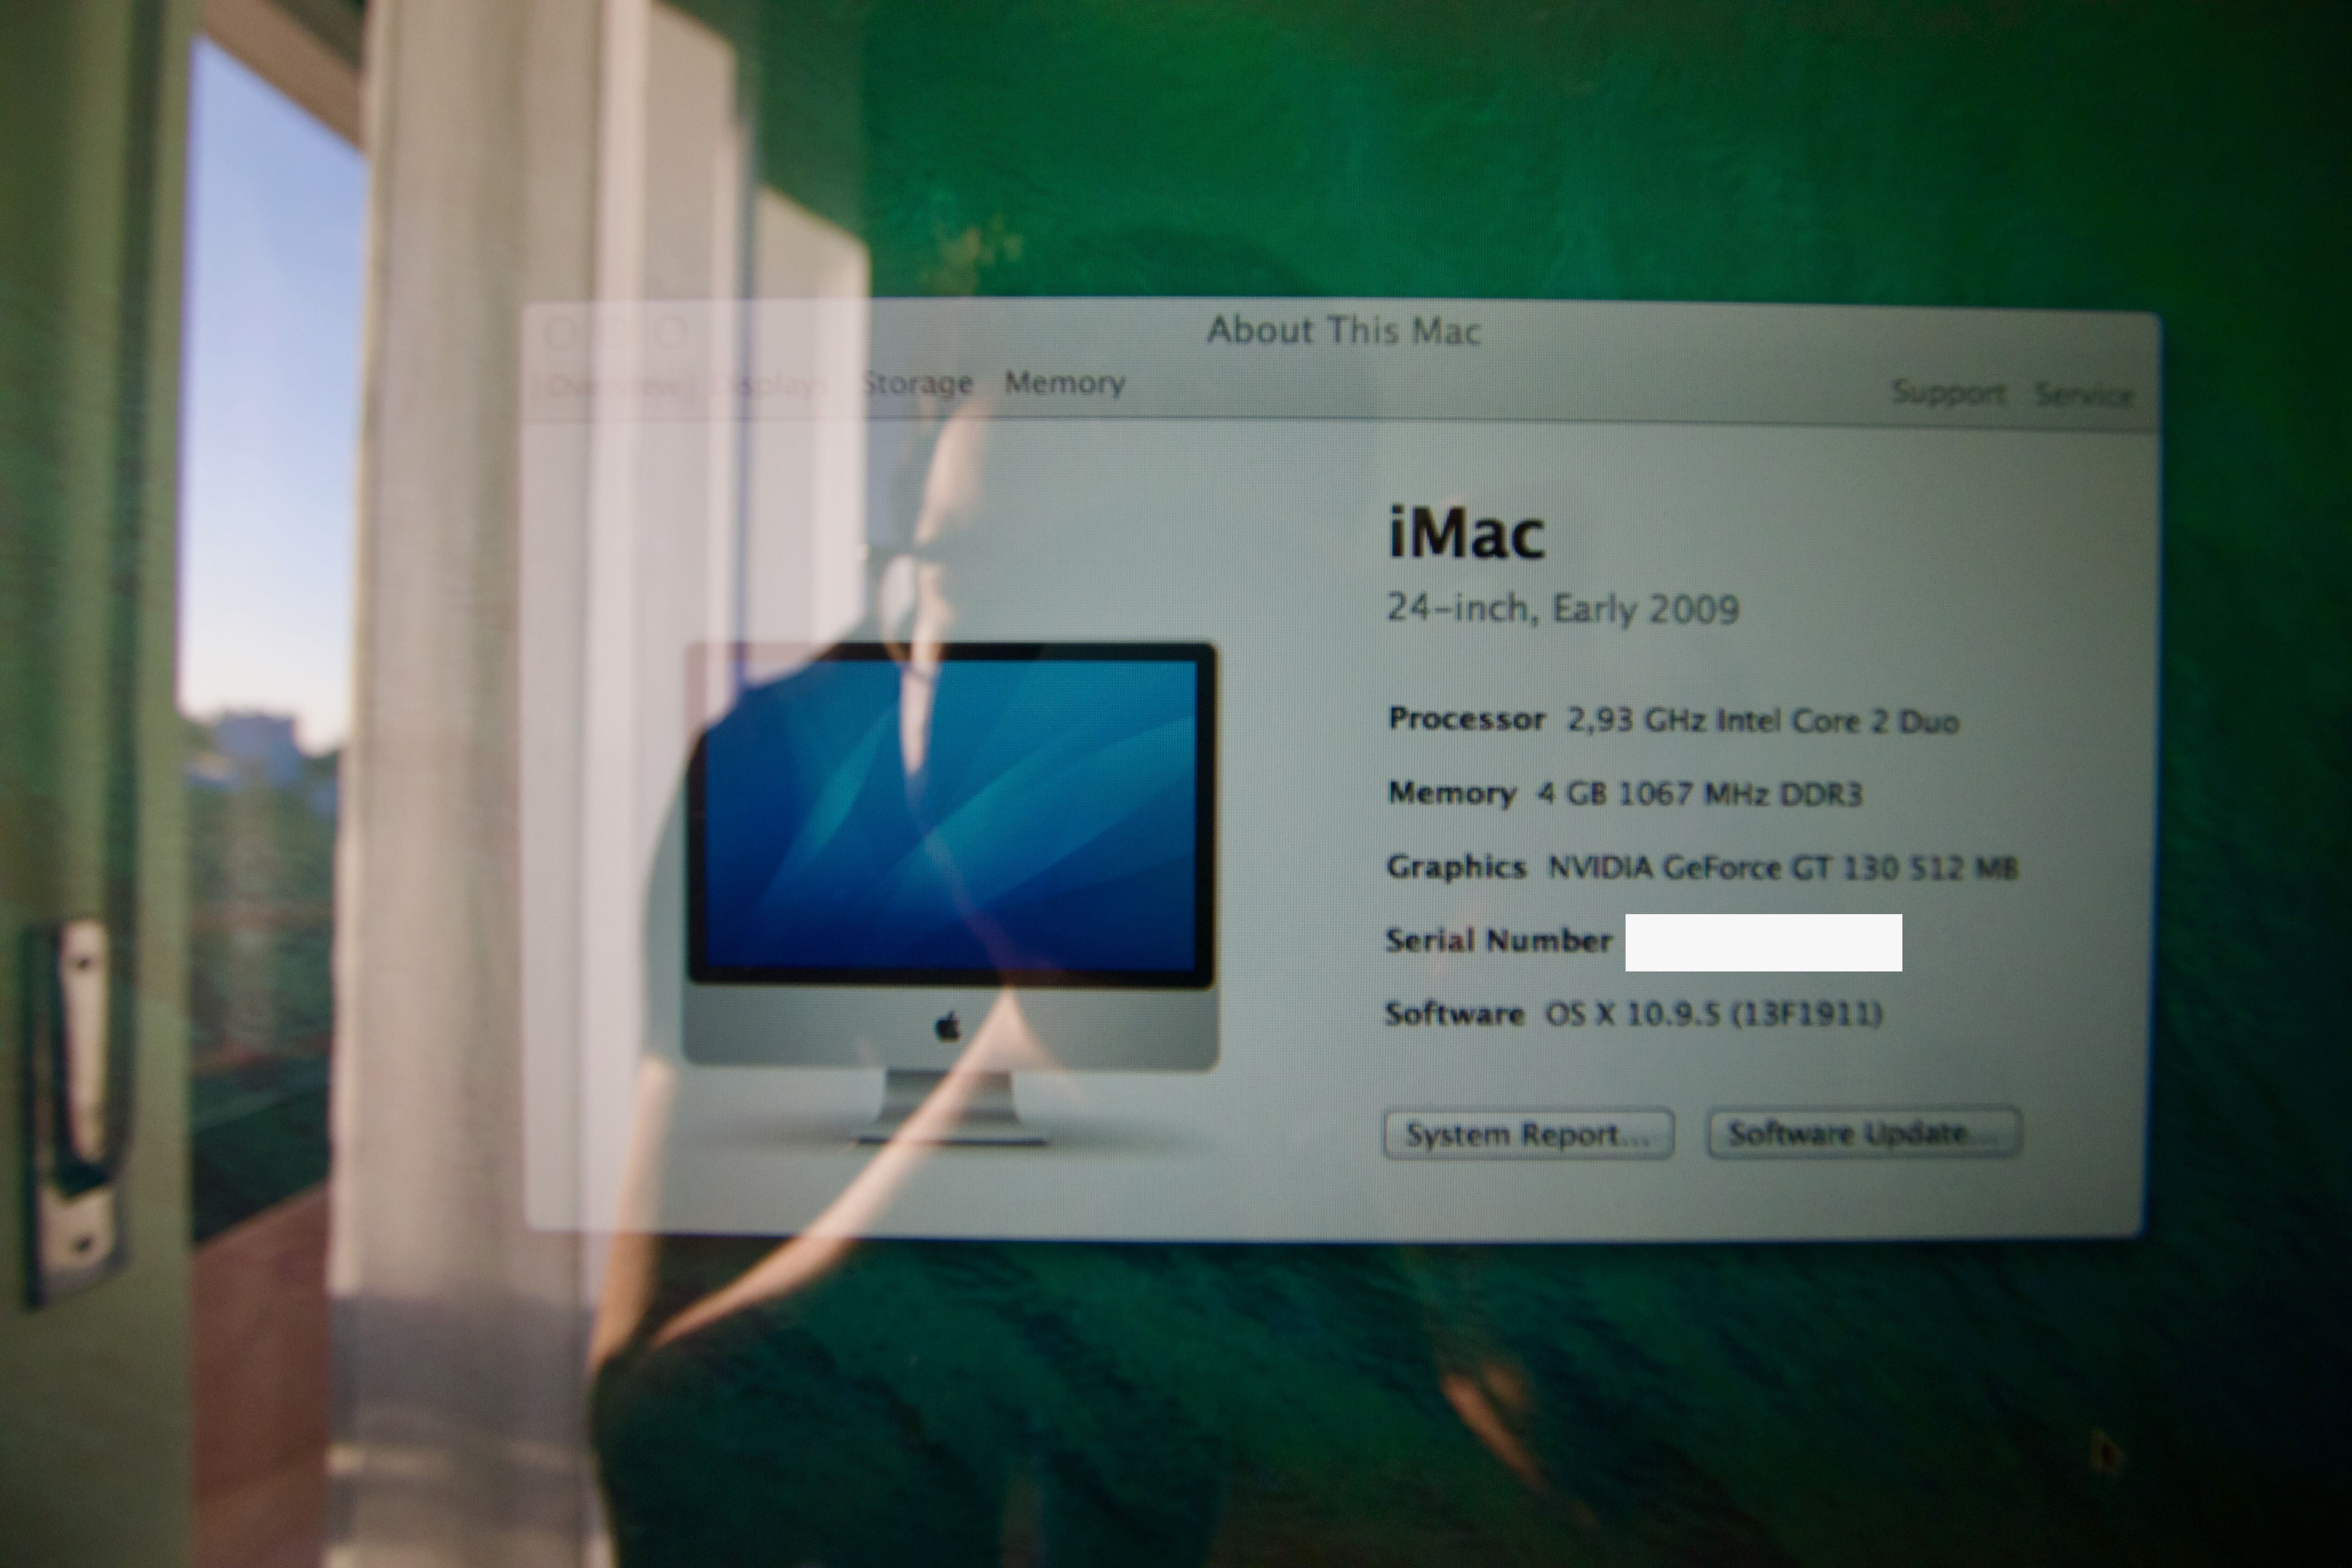 iMac 24" Intel Core 2 Duo 2.93 Ghz (Early 2009)